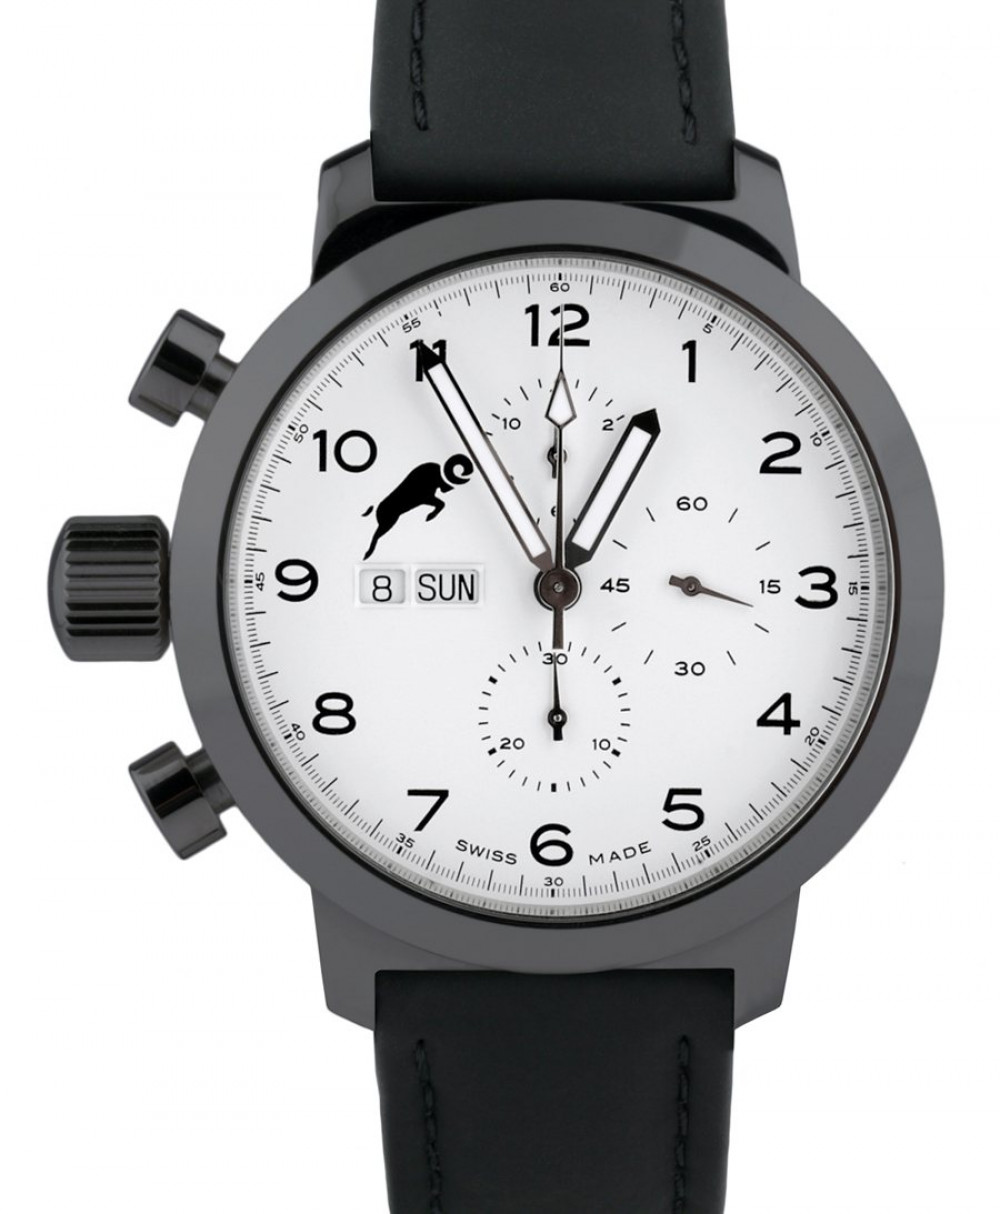 Zegarek firmy RAM, model Carnero